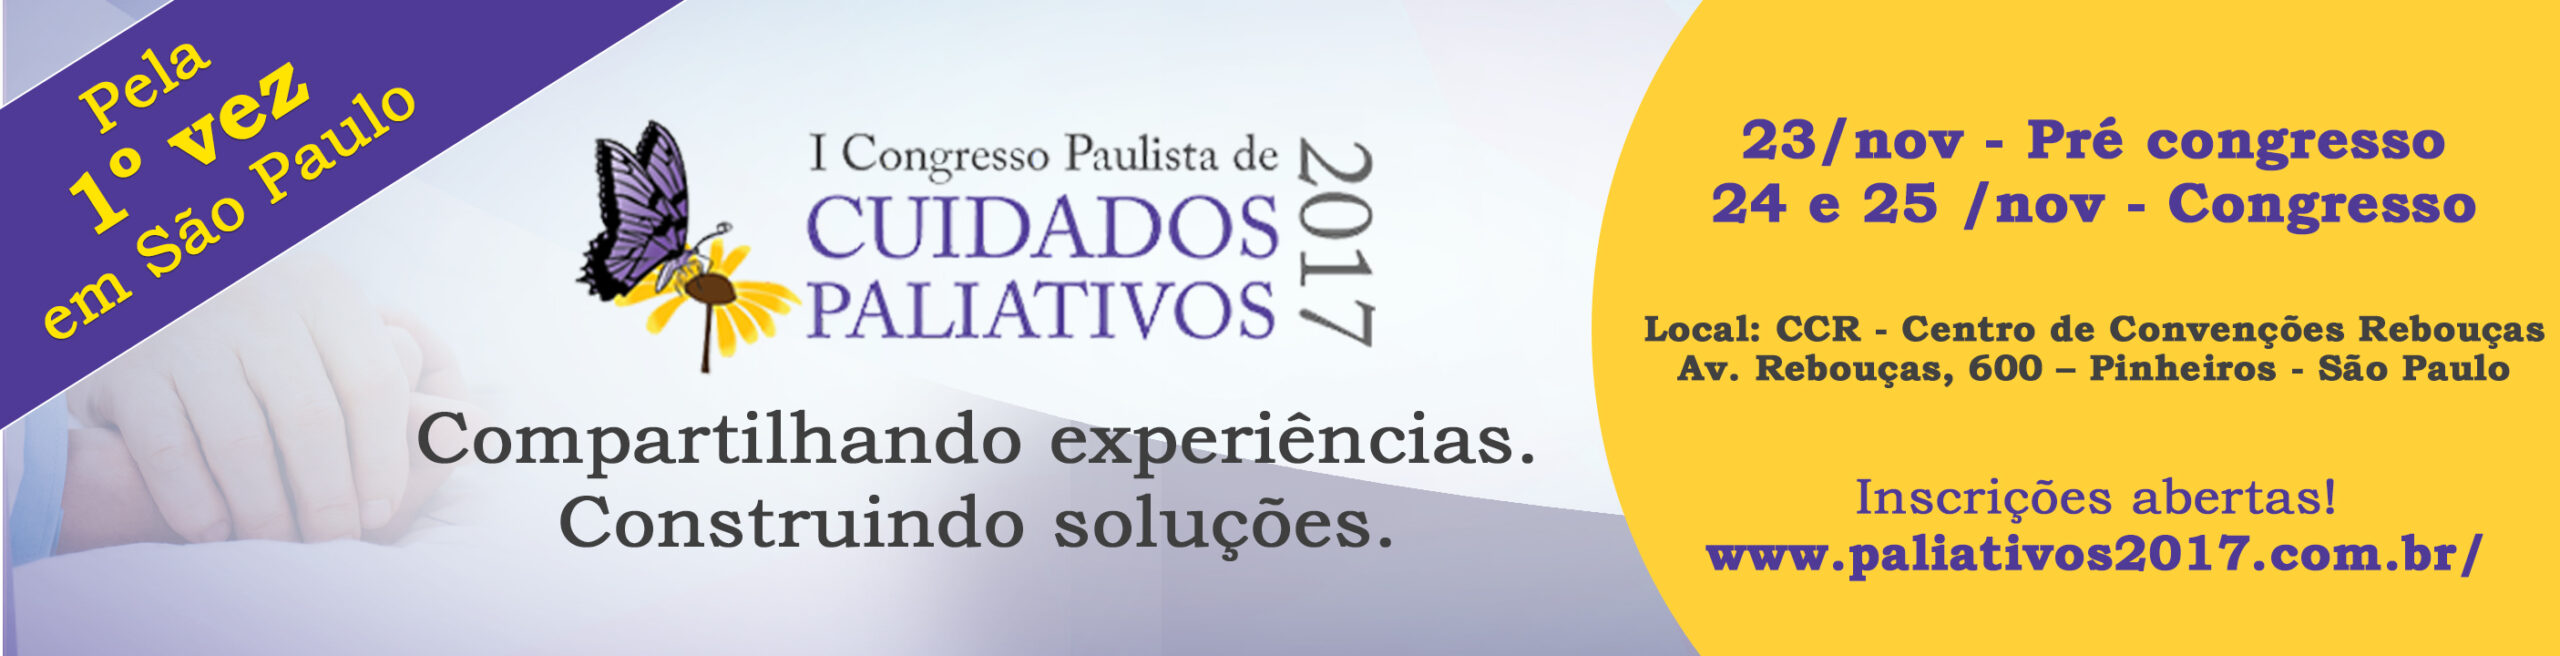 I Congresso Paulista de Cuidados Paliativos acontece dias 24 e 25 de Novembro